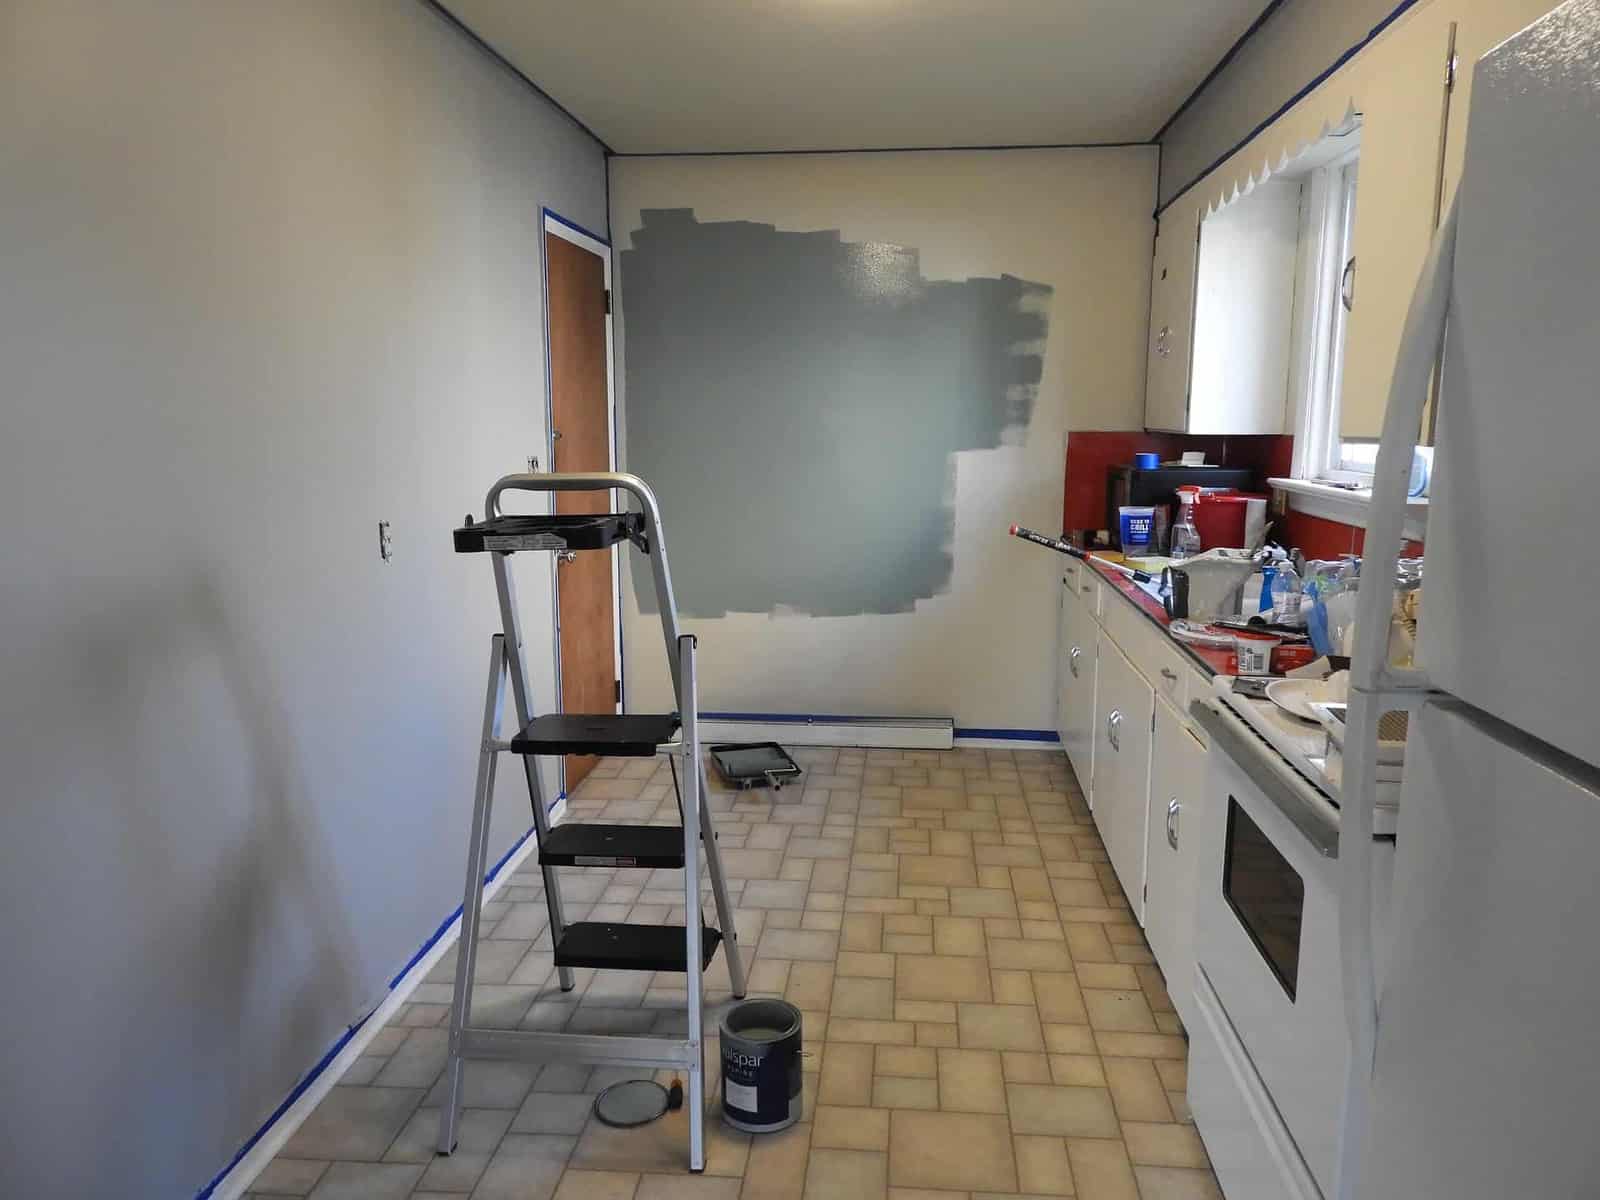 Kitchen cabinet - Paint